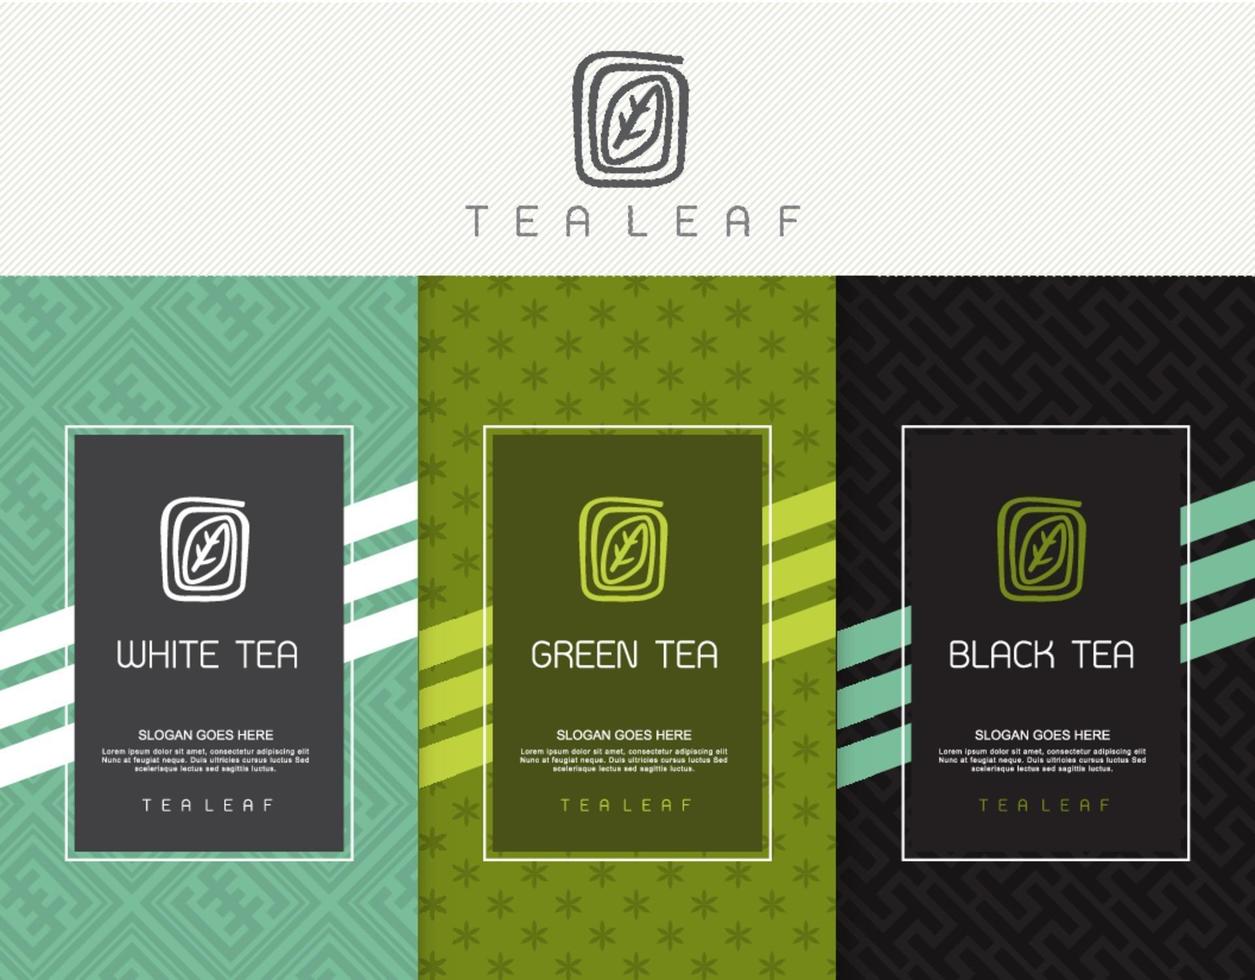 Vektor-Satz von Vorlagen Verpackung Tee, Logo, Etikett, Banner, Poster, Identität, Branding. stilvolles Design für schwarzen Tee - grüner Tee - weißer Tee - Oolong-Tee vektor